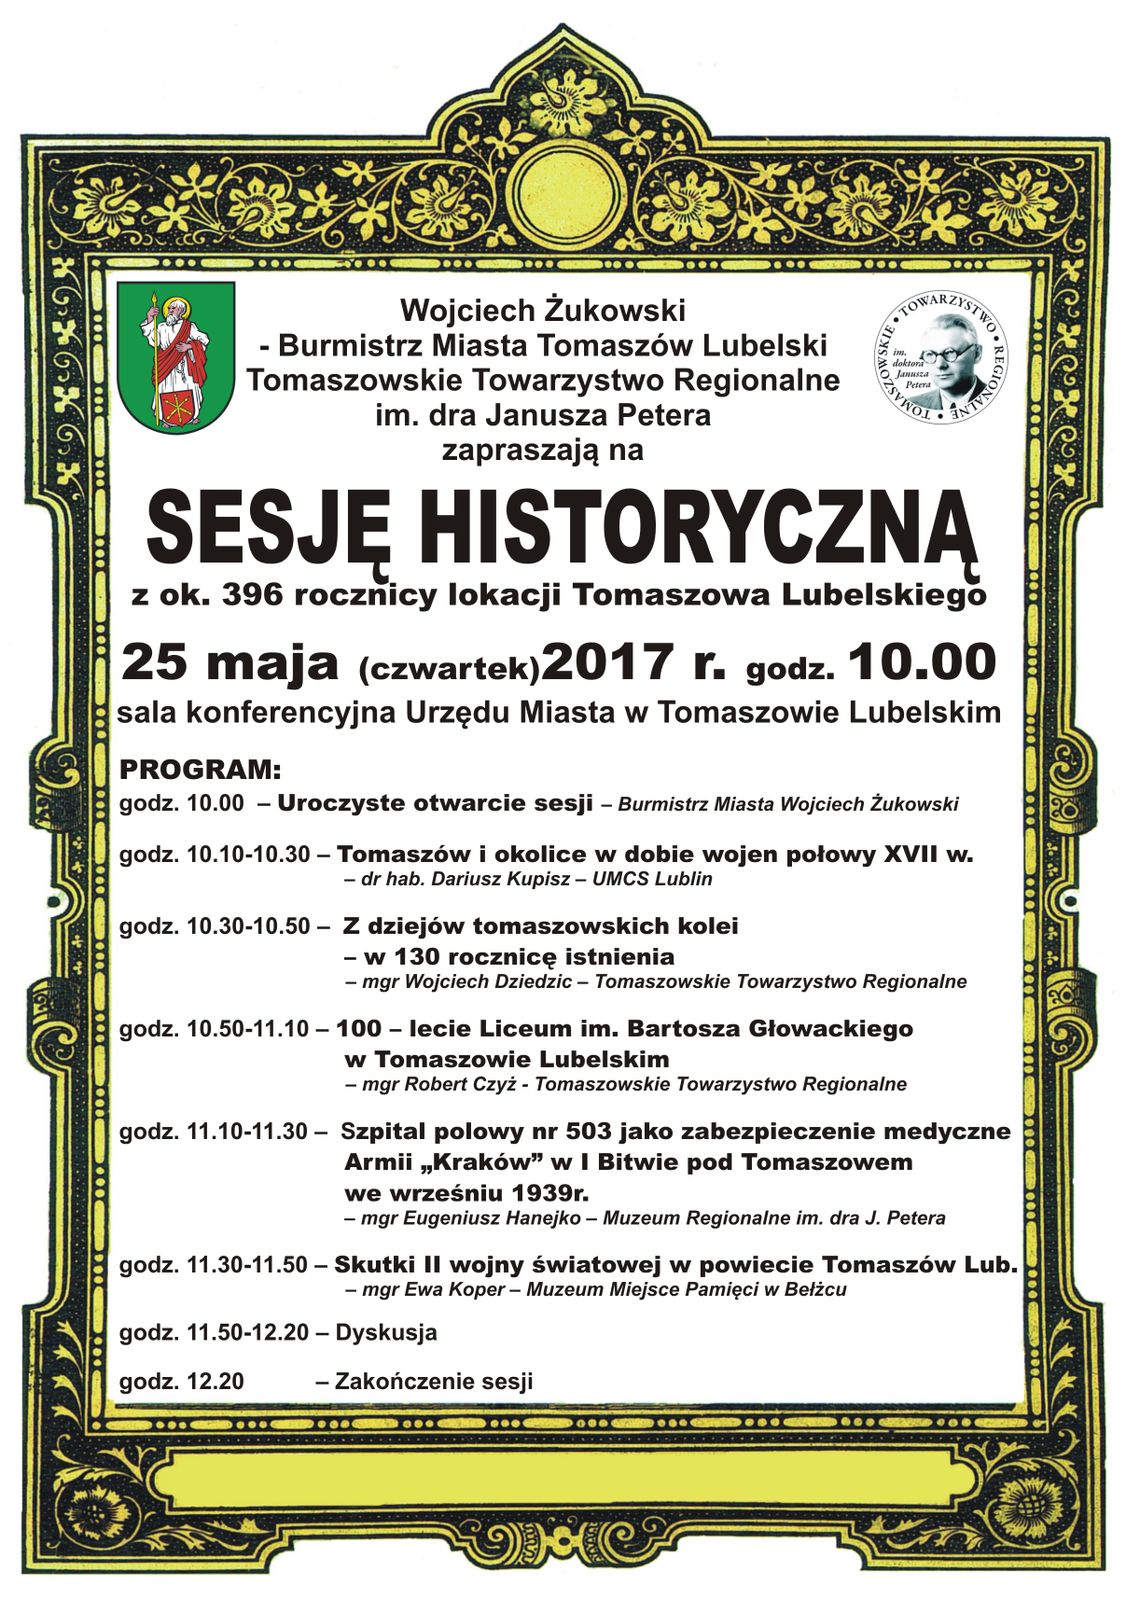 Sesja historyczna w rocznicę założenia Tomaszowa Lubelskiego